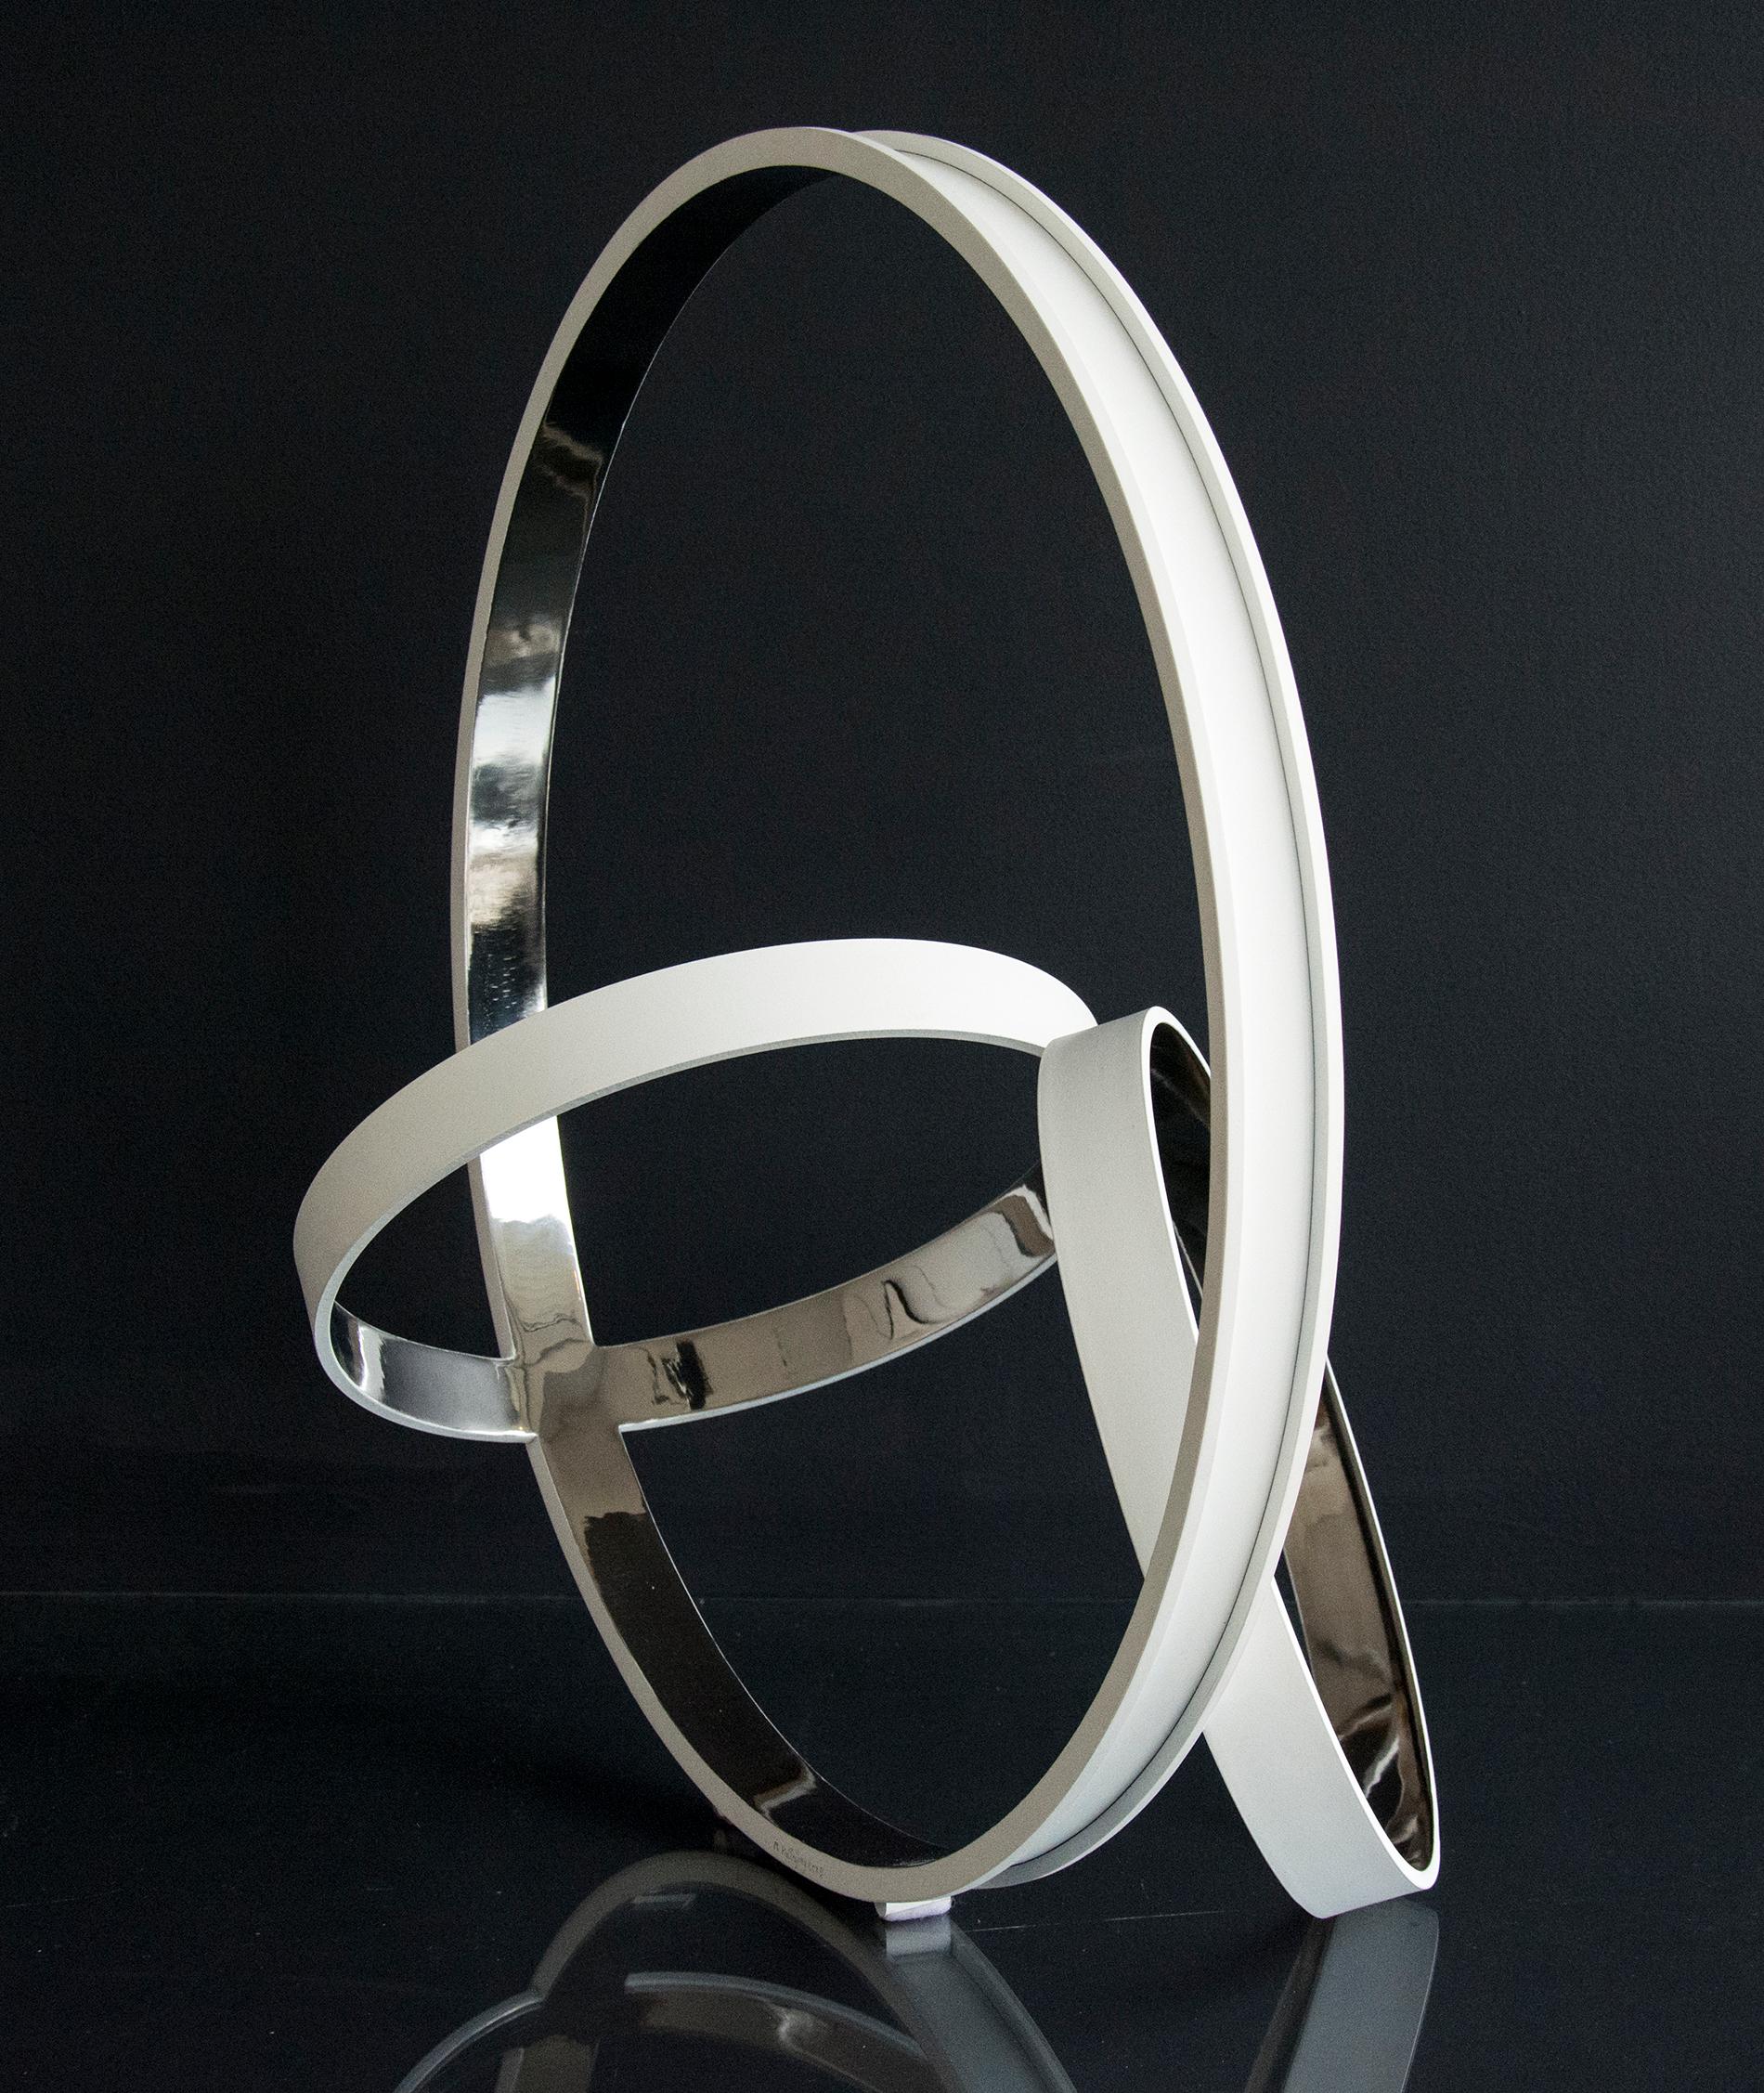 Trois anneaux d'acier inoxydable, polis et brillants à l'intérieur et blancs mats à l'extérieur, se croisent à des angles dynamiques dans cette élégante sculpture de Philippe Pallafray.

Philippe Pallafray (né en 1965, France) est membre de la